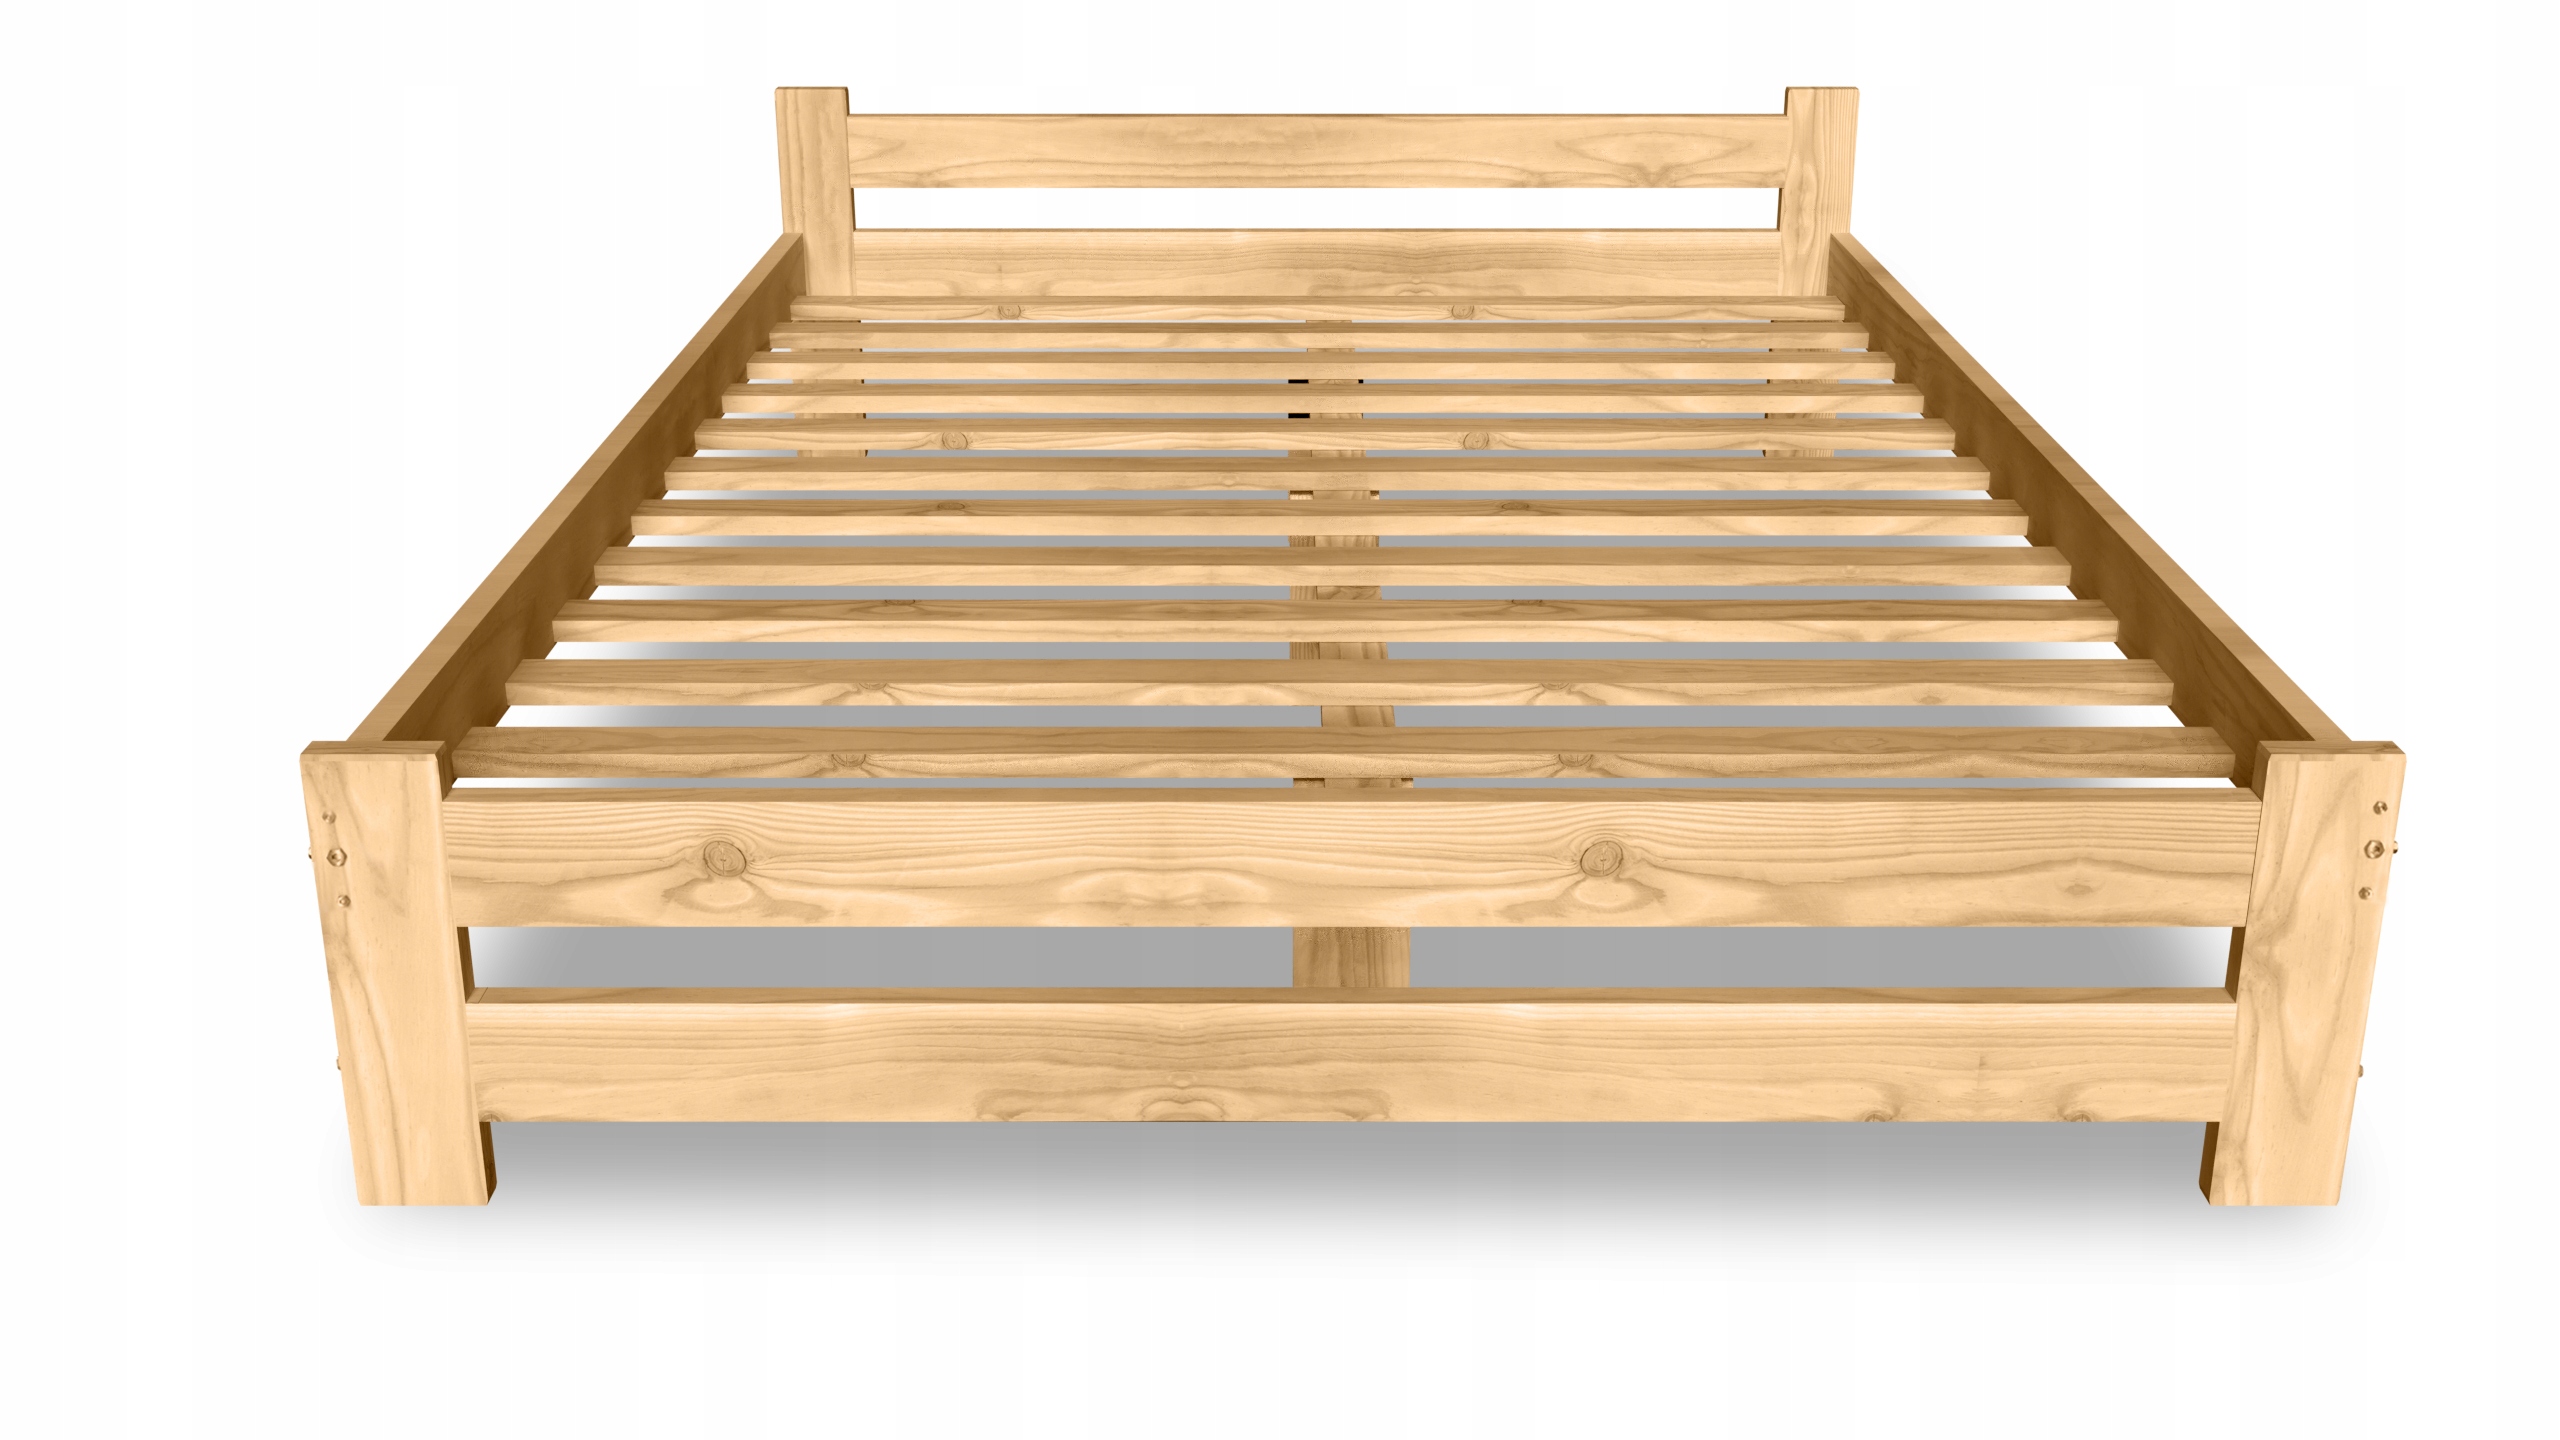 Купить деревянную кровать недорого. Кровать из массива сосны 160х200 икеа. Кровать ikea 160 200 из массива сосны. Кровать Валенсия - 200x120 сосна массив каркас. Деревянная кровать из сосны Дороти 80x200 РАМАПРОЧНАЯ.